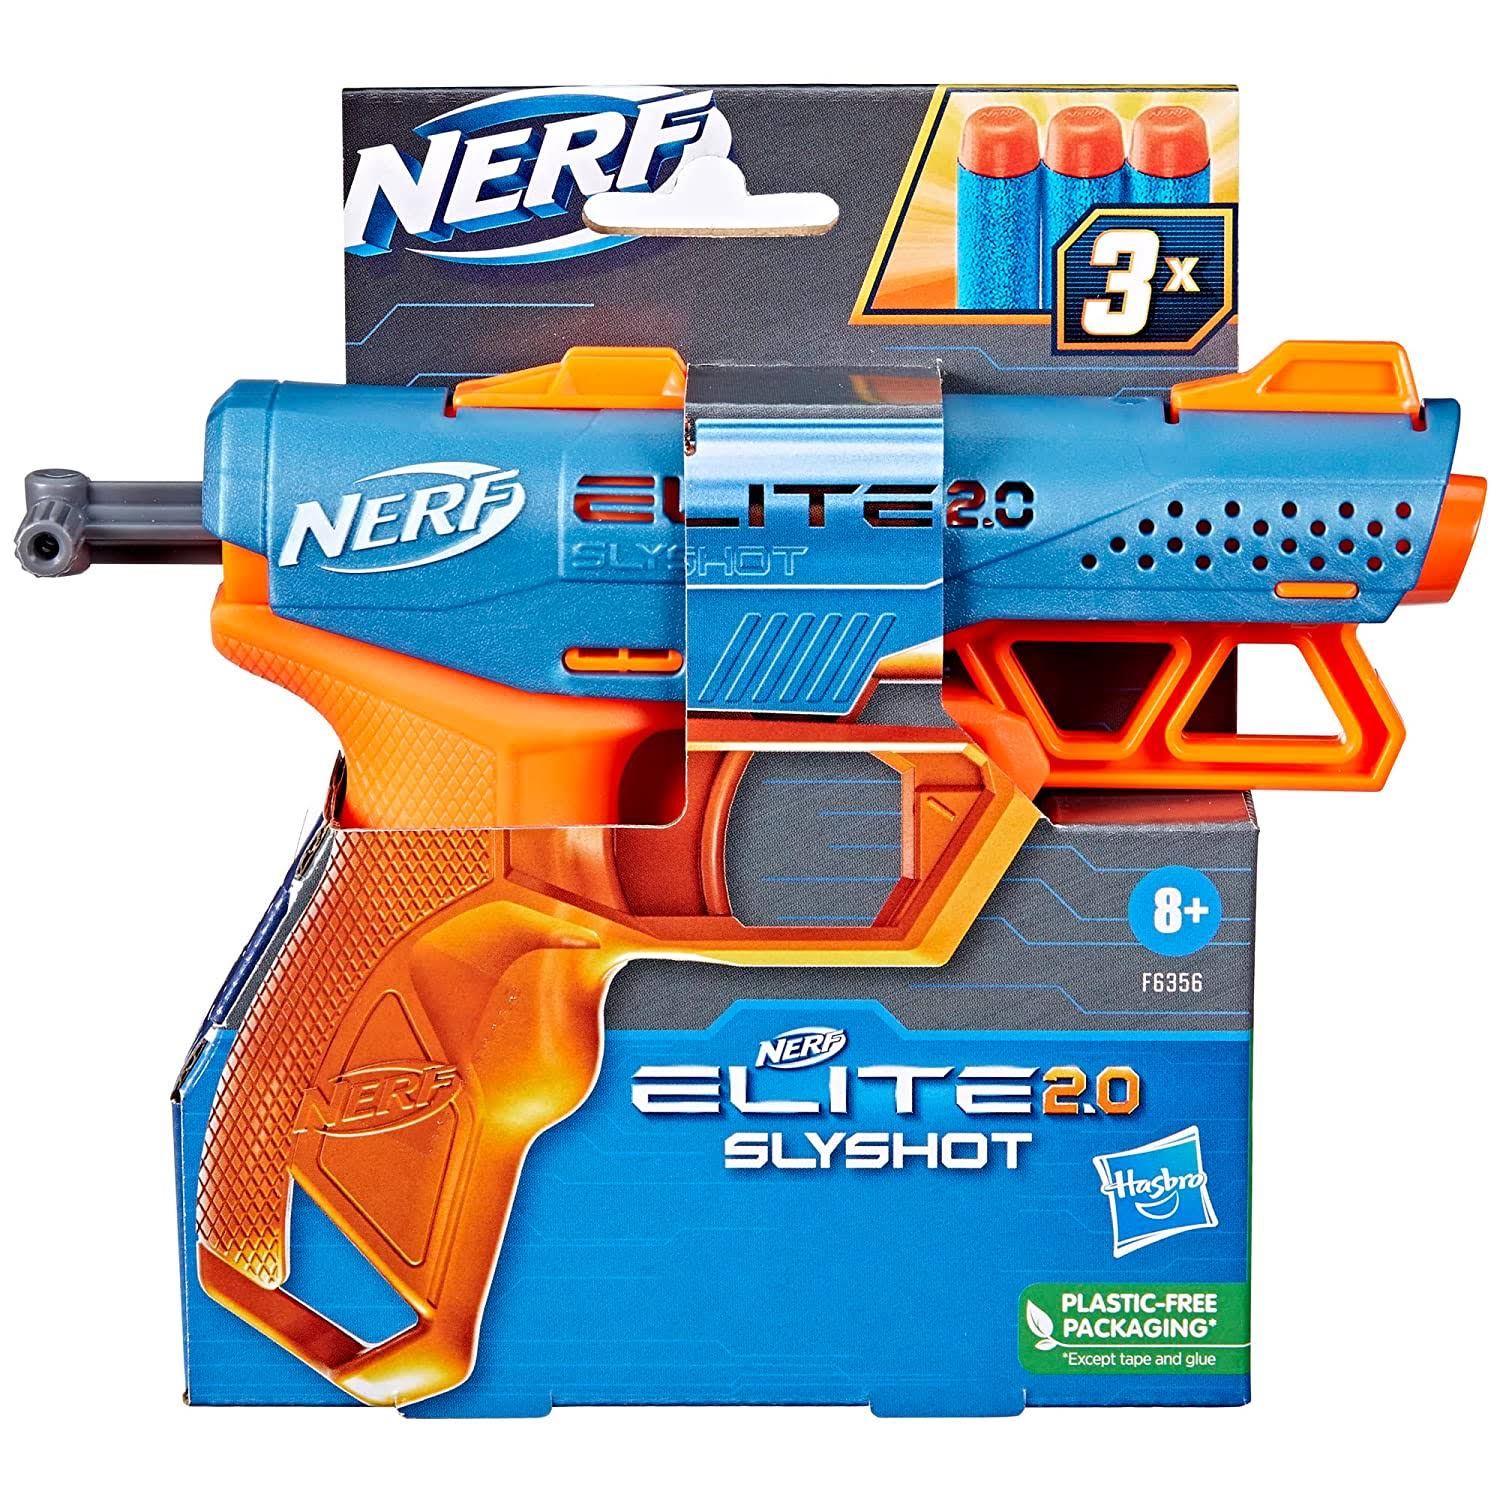 Nerf Elite - 2.0 Slyshot